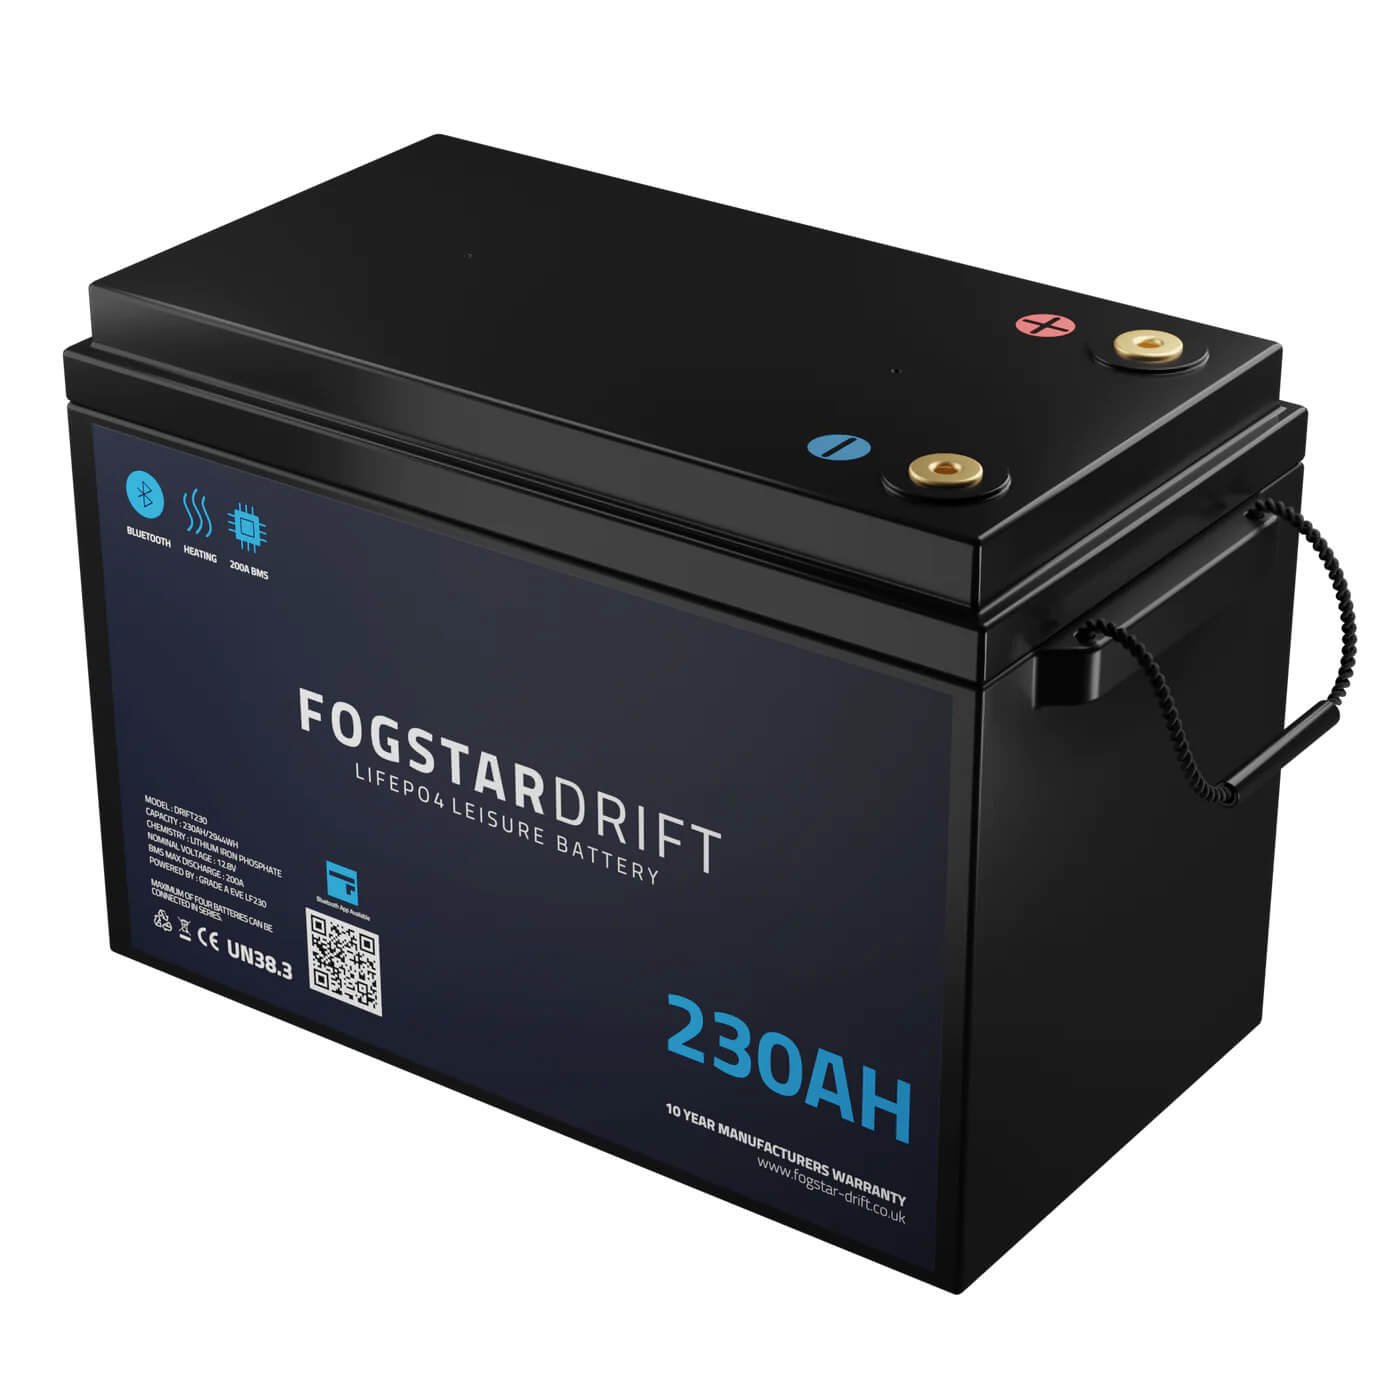 Fogstar Drift 230Ah - 12V lithium leisure battery